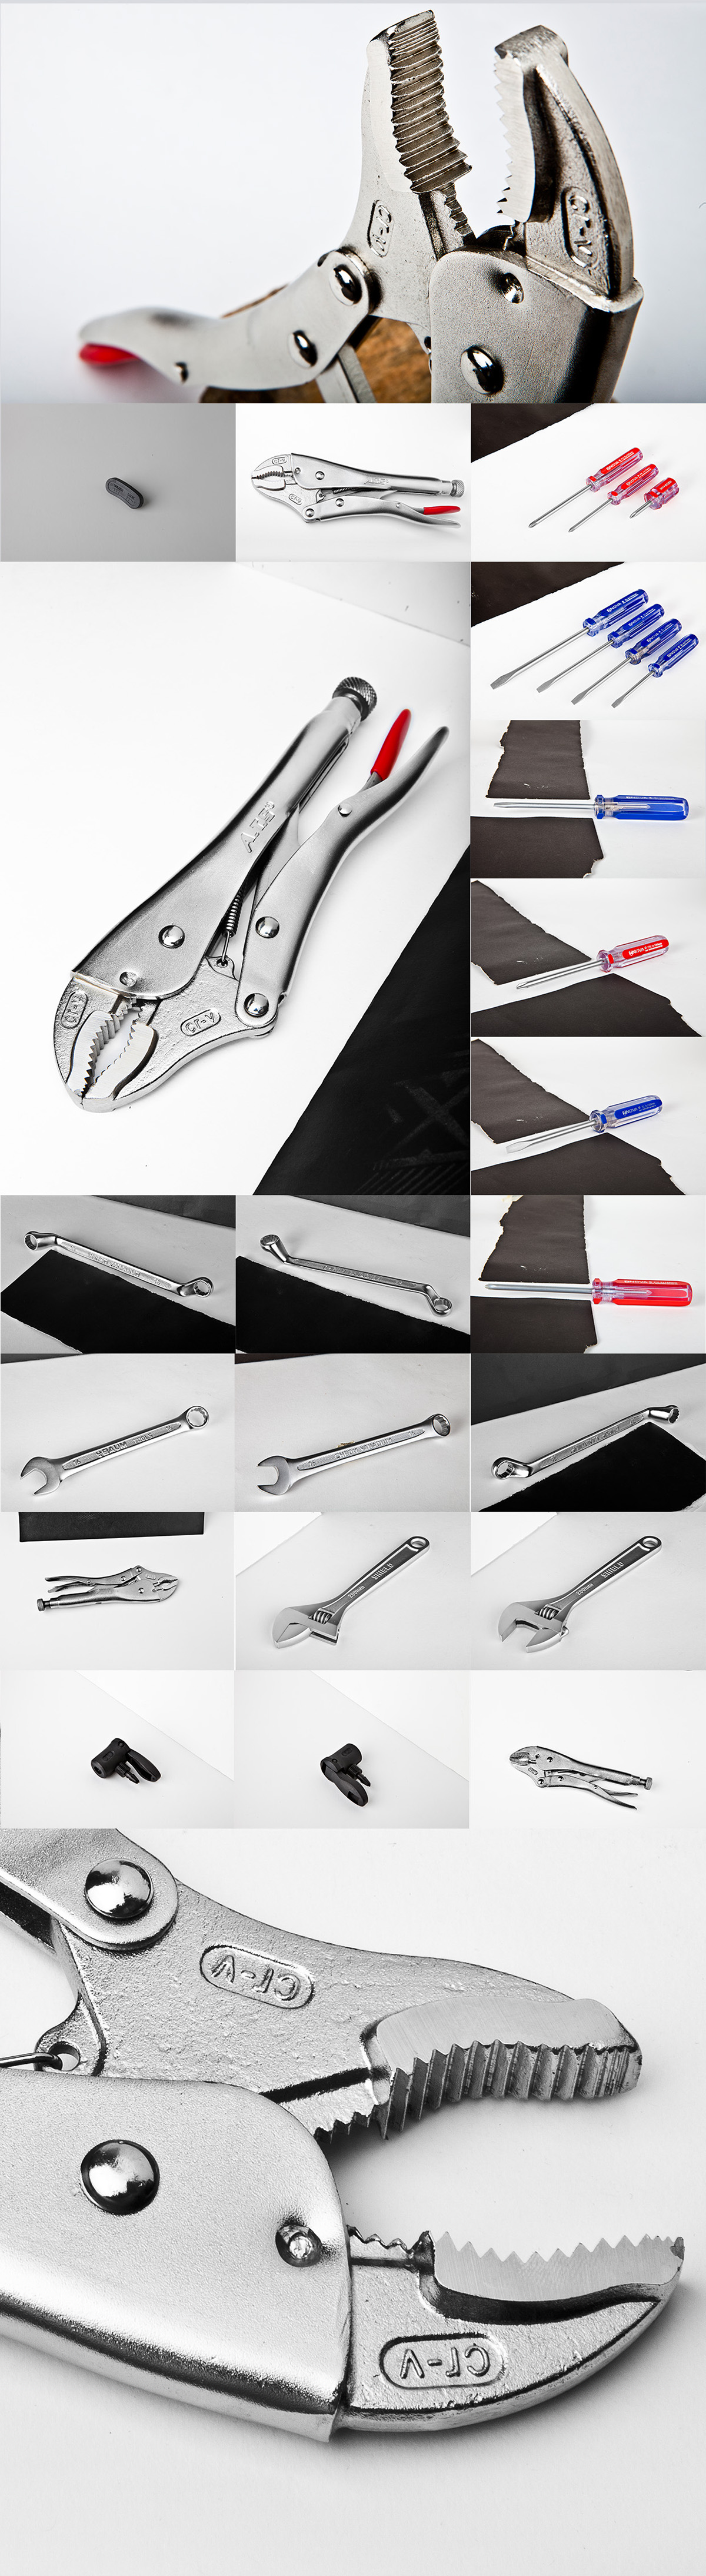 hardware tool tools shot industrial pliers screwdriver locking plier image hamed ghassemi ghasemi metal